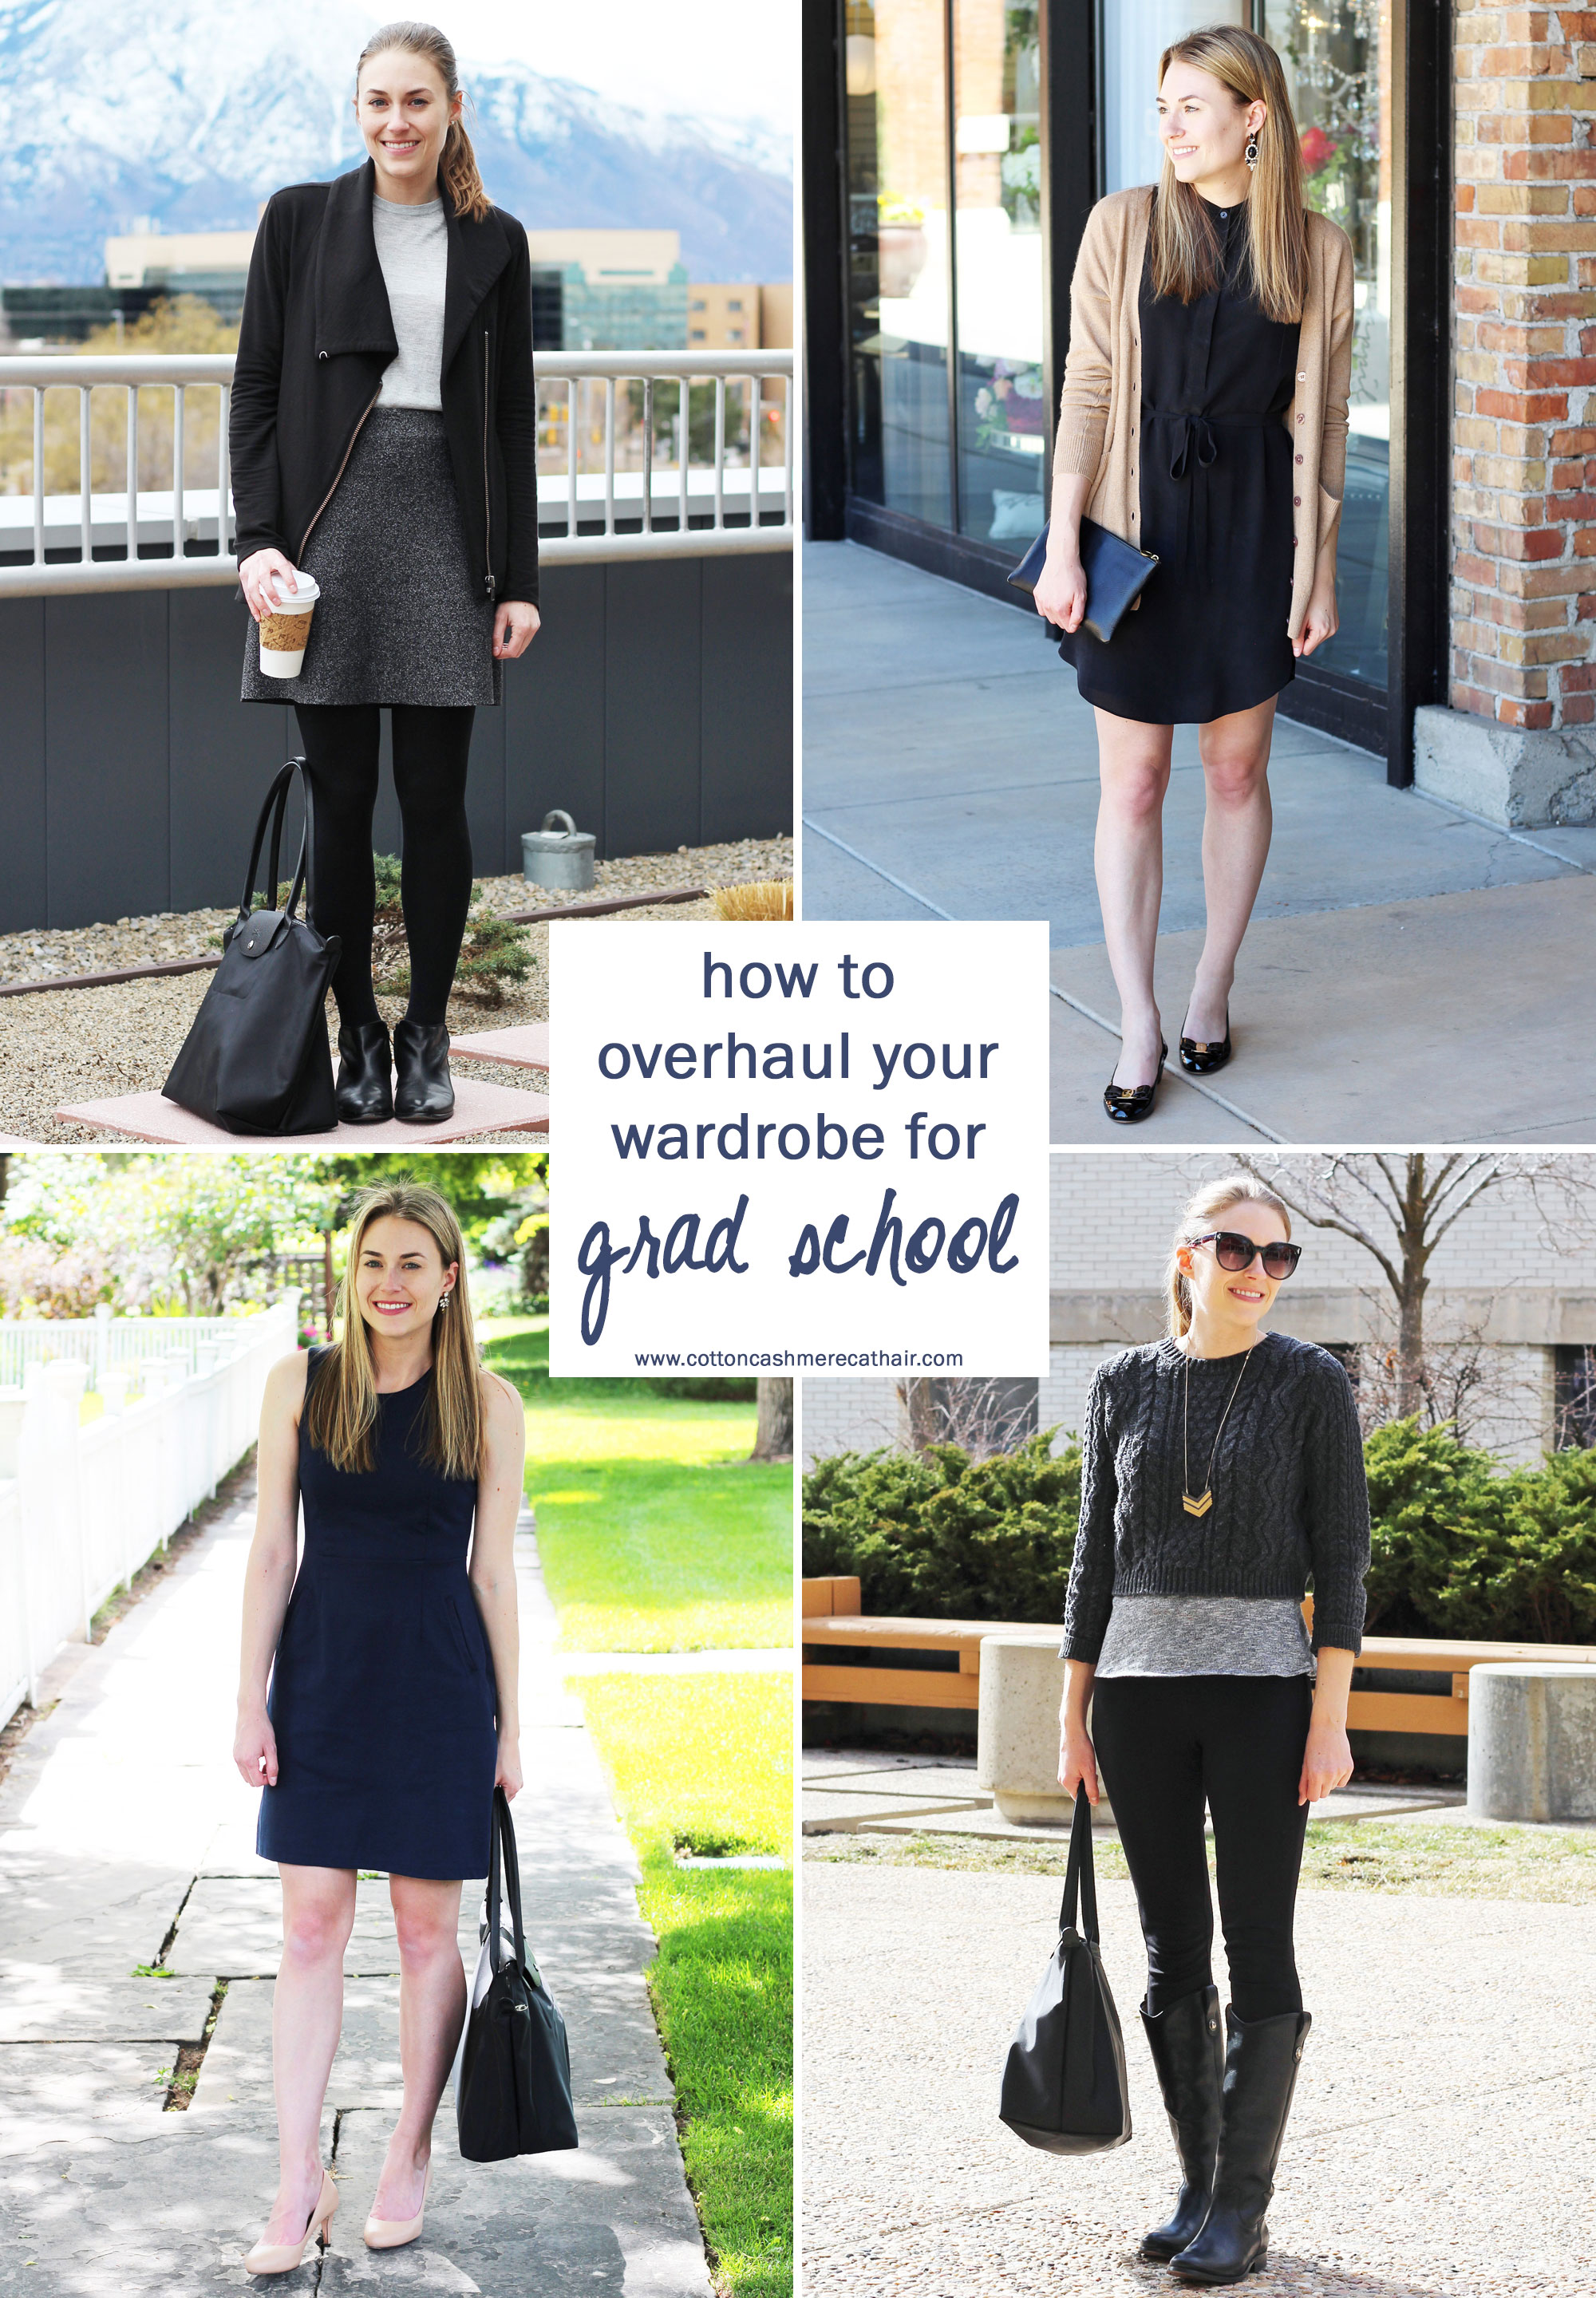 How to Overhaul Your Wardrobe for Grad School